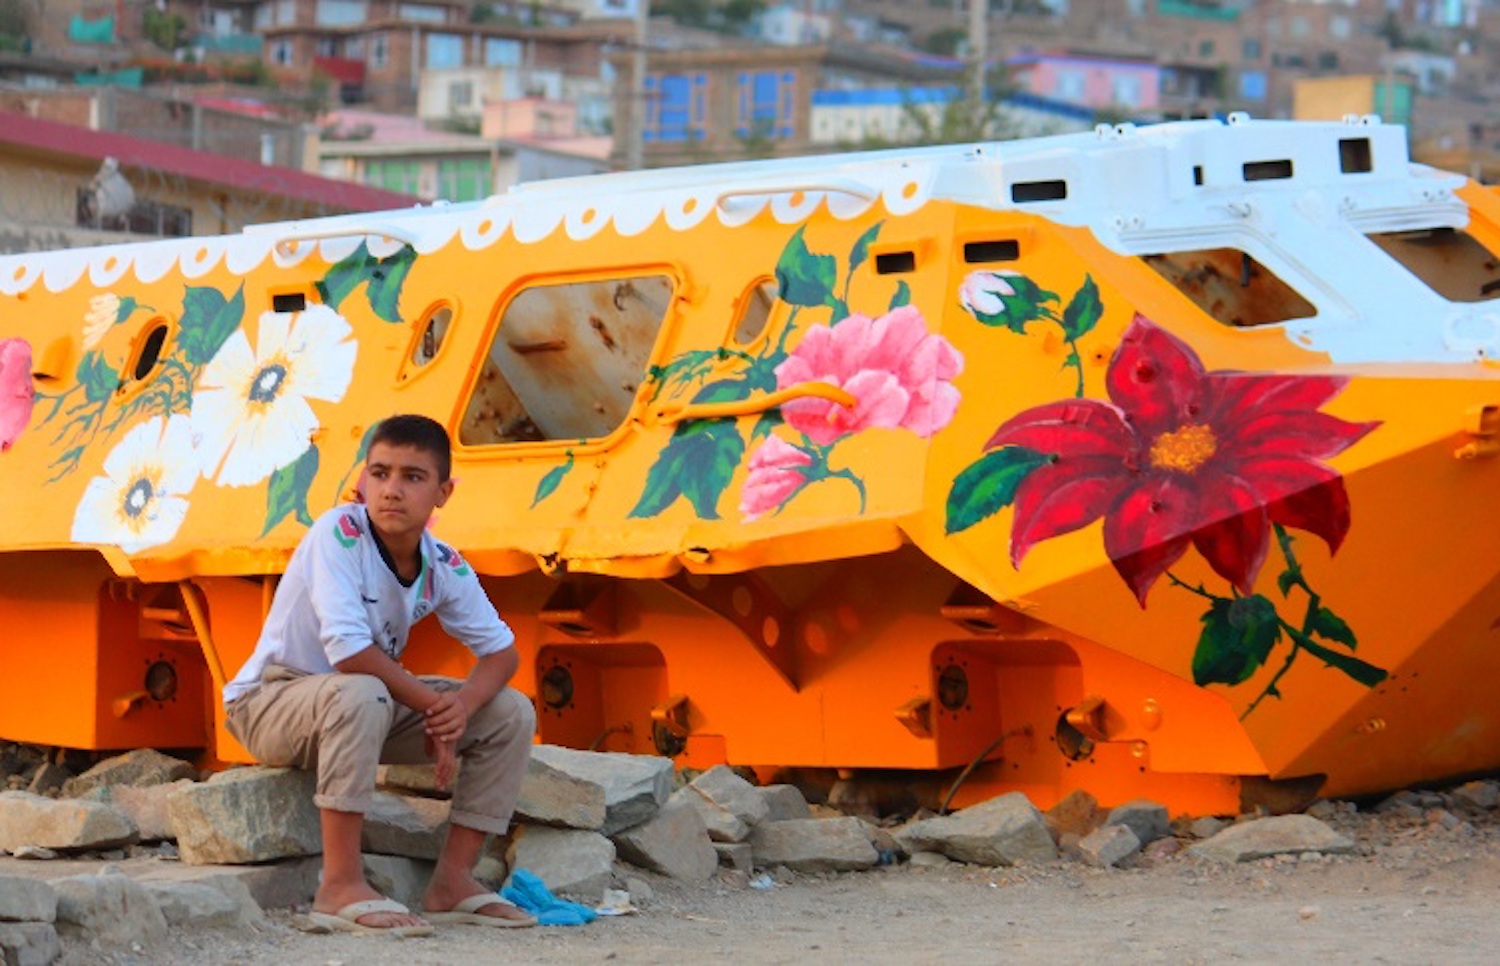 Afghanistan : l'artiste Neda Tayeibi transforme les véhicules militaires abandonnés en art